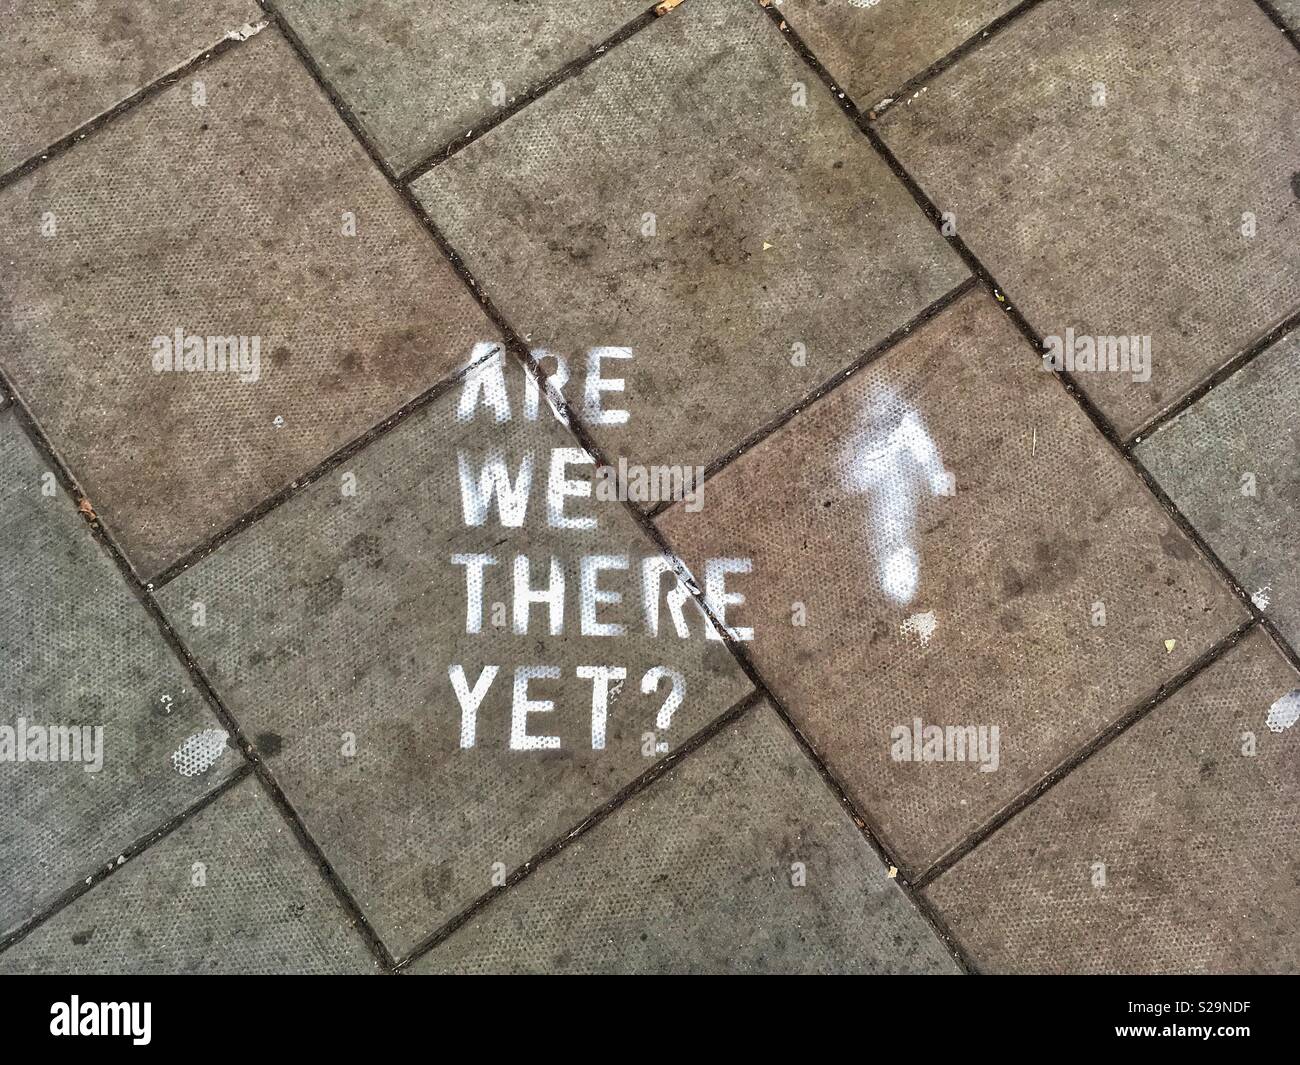 Der Slogan "Sind wir schon da?" Auf einer schmutzigen pflaster gemalt Stockfoto